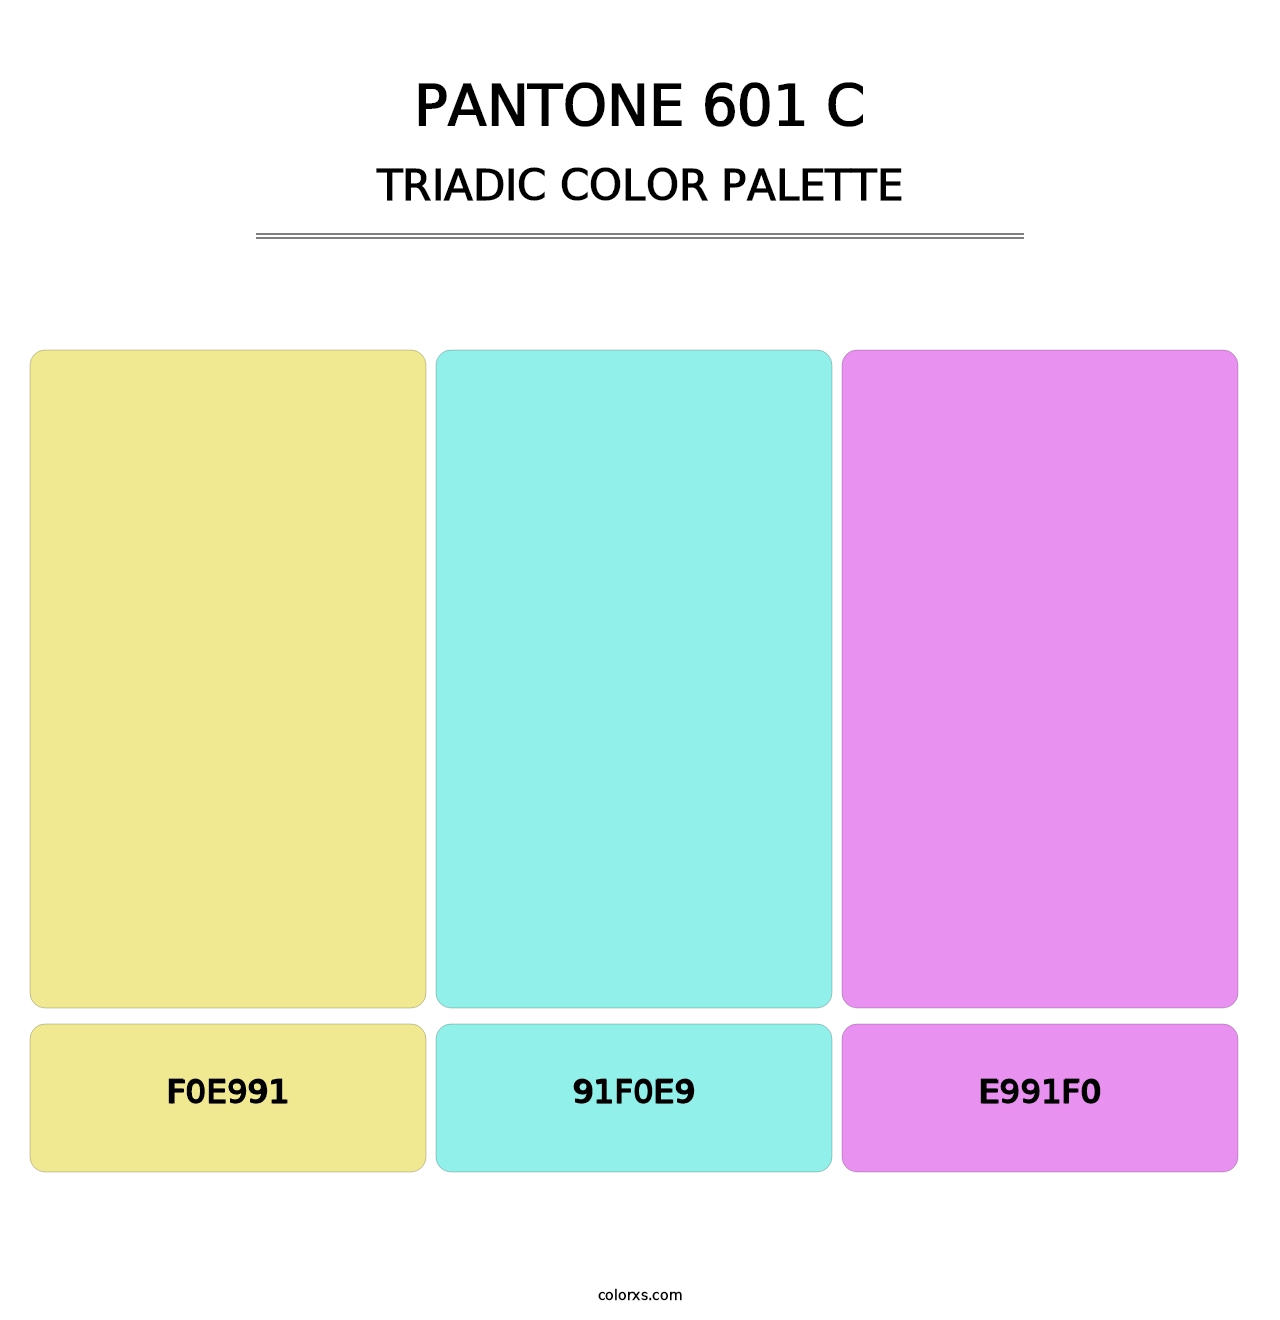 PANTONE 601 C - Triadic Color Palette